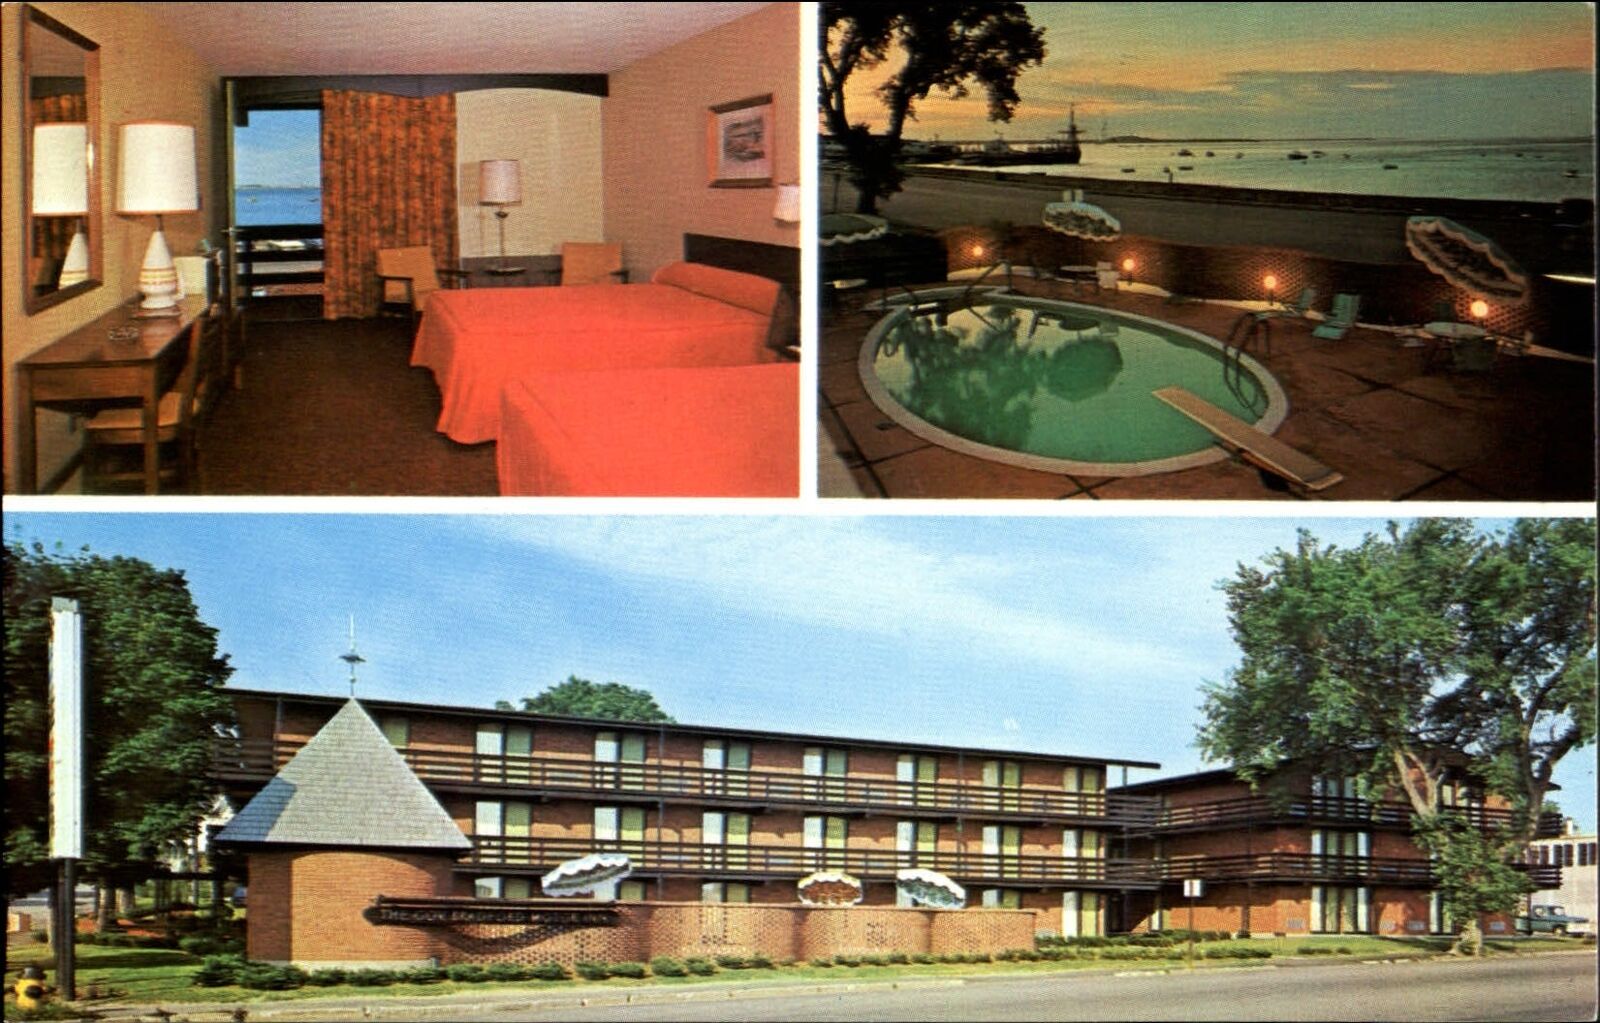 Governor Bradford Motor Inn ~ Plymouth Massachusetts ~ pool room interior 1960s